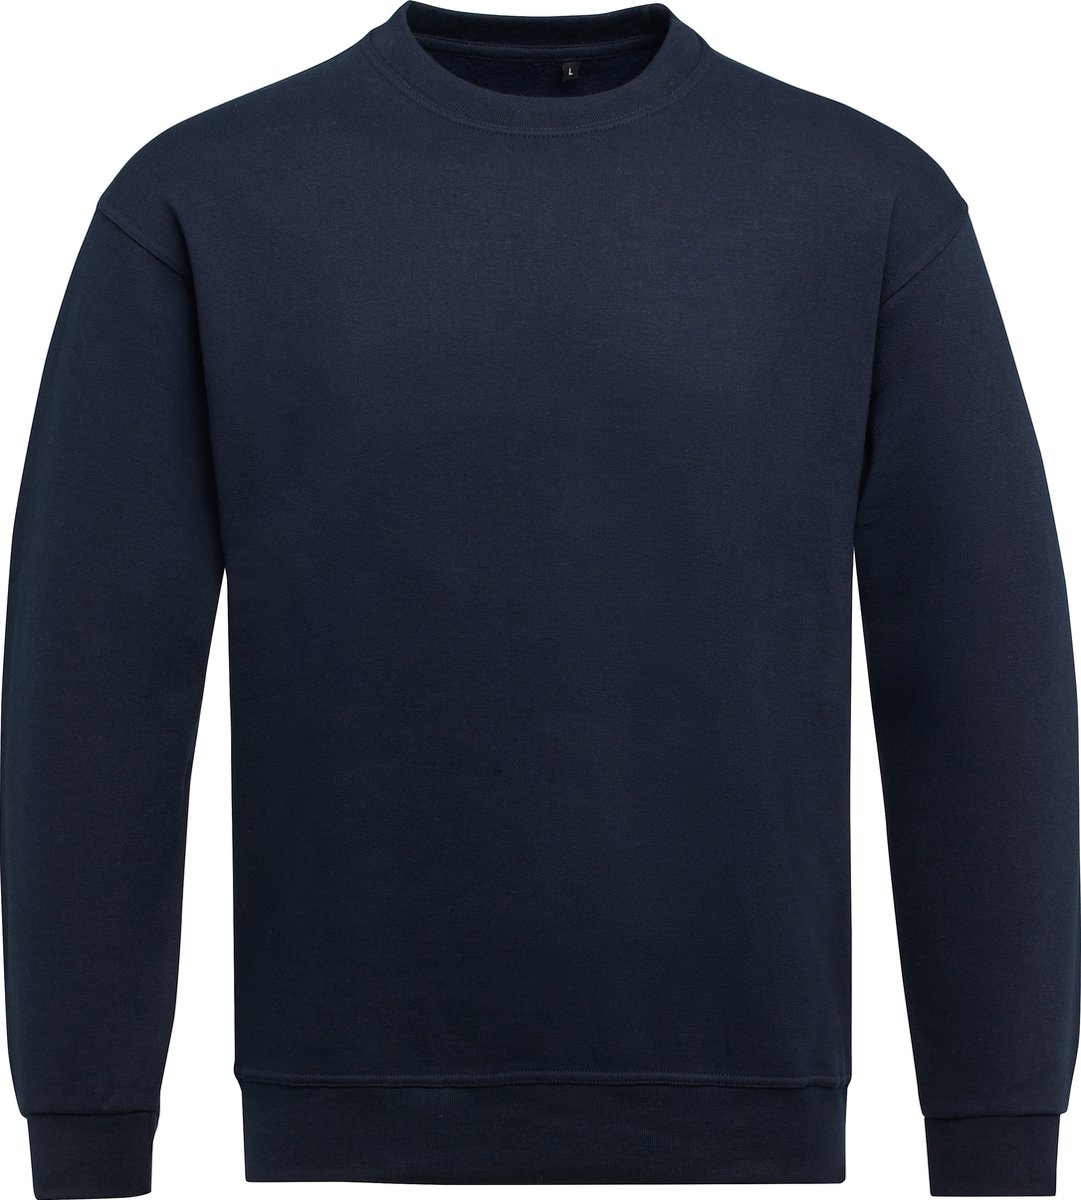 Donker Blauwe unisex sweater merk SG Essential maat M